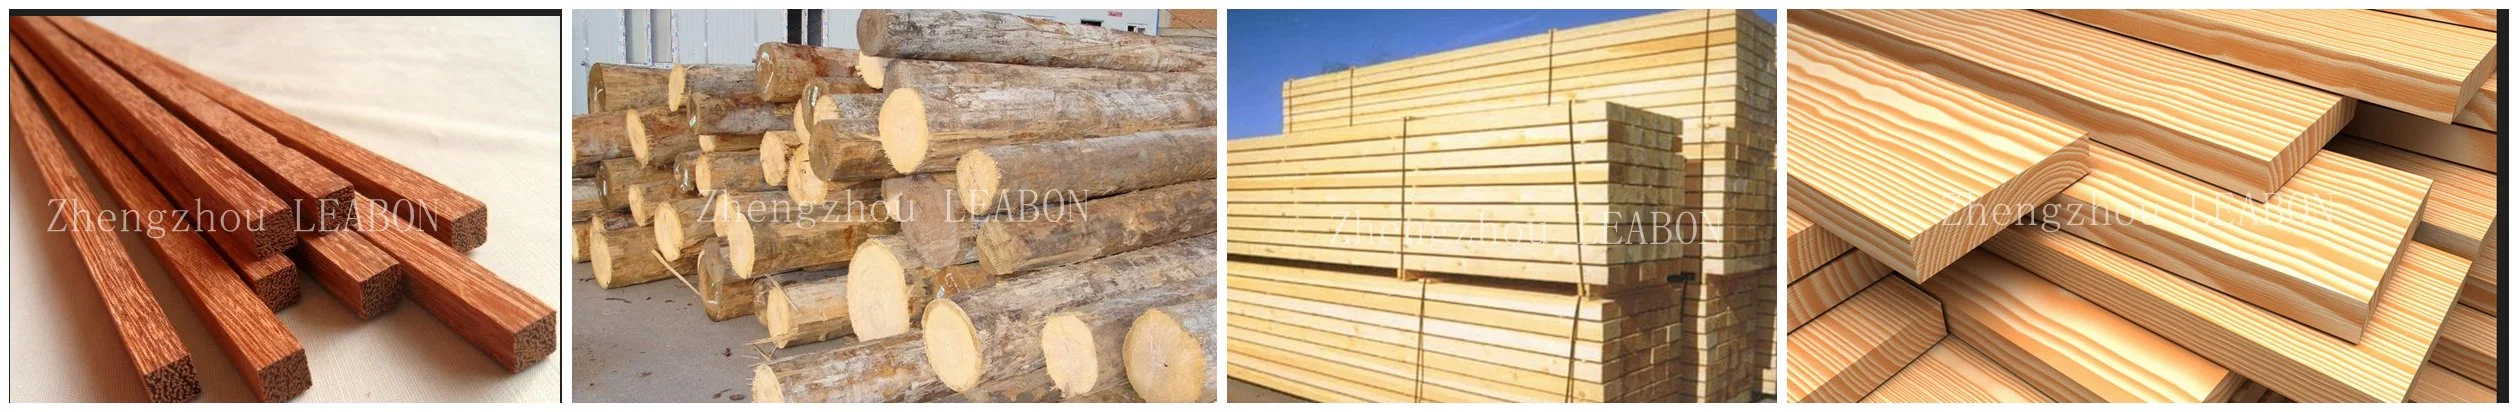 Elektrische Holzbearbeitung Solid Square Multi Blade Holz Säge Maschine Log Sägemaschine Schneiden